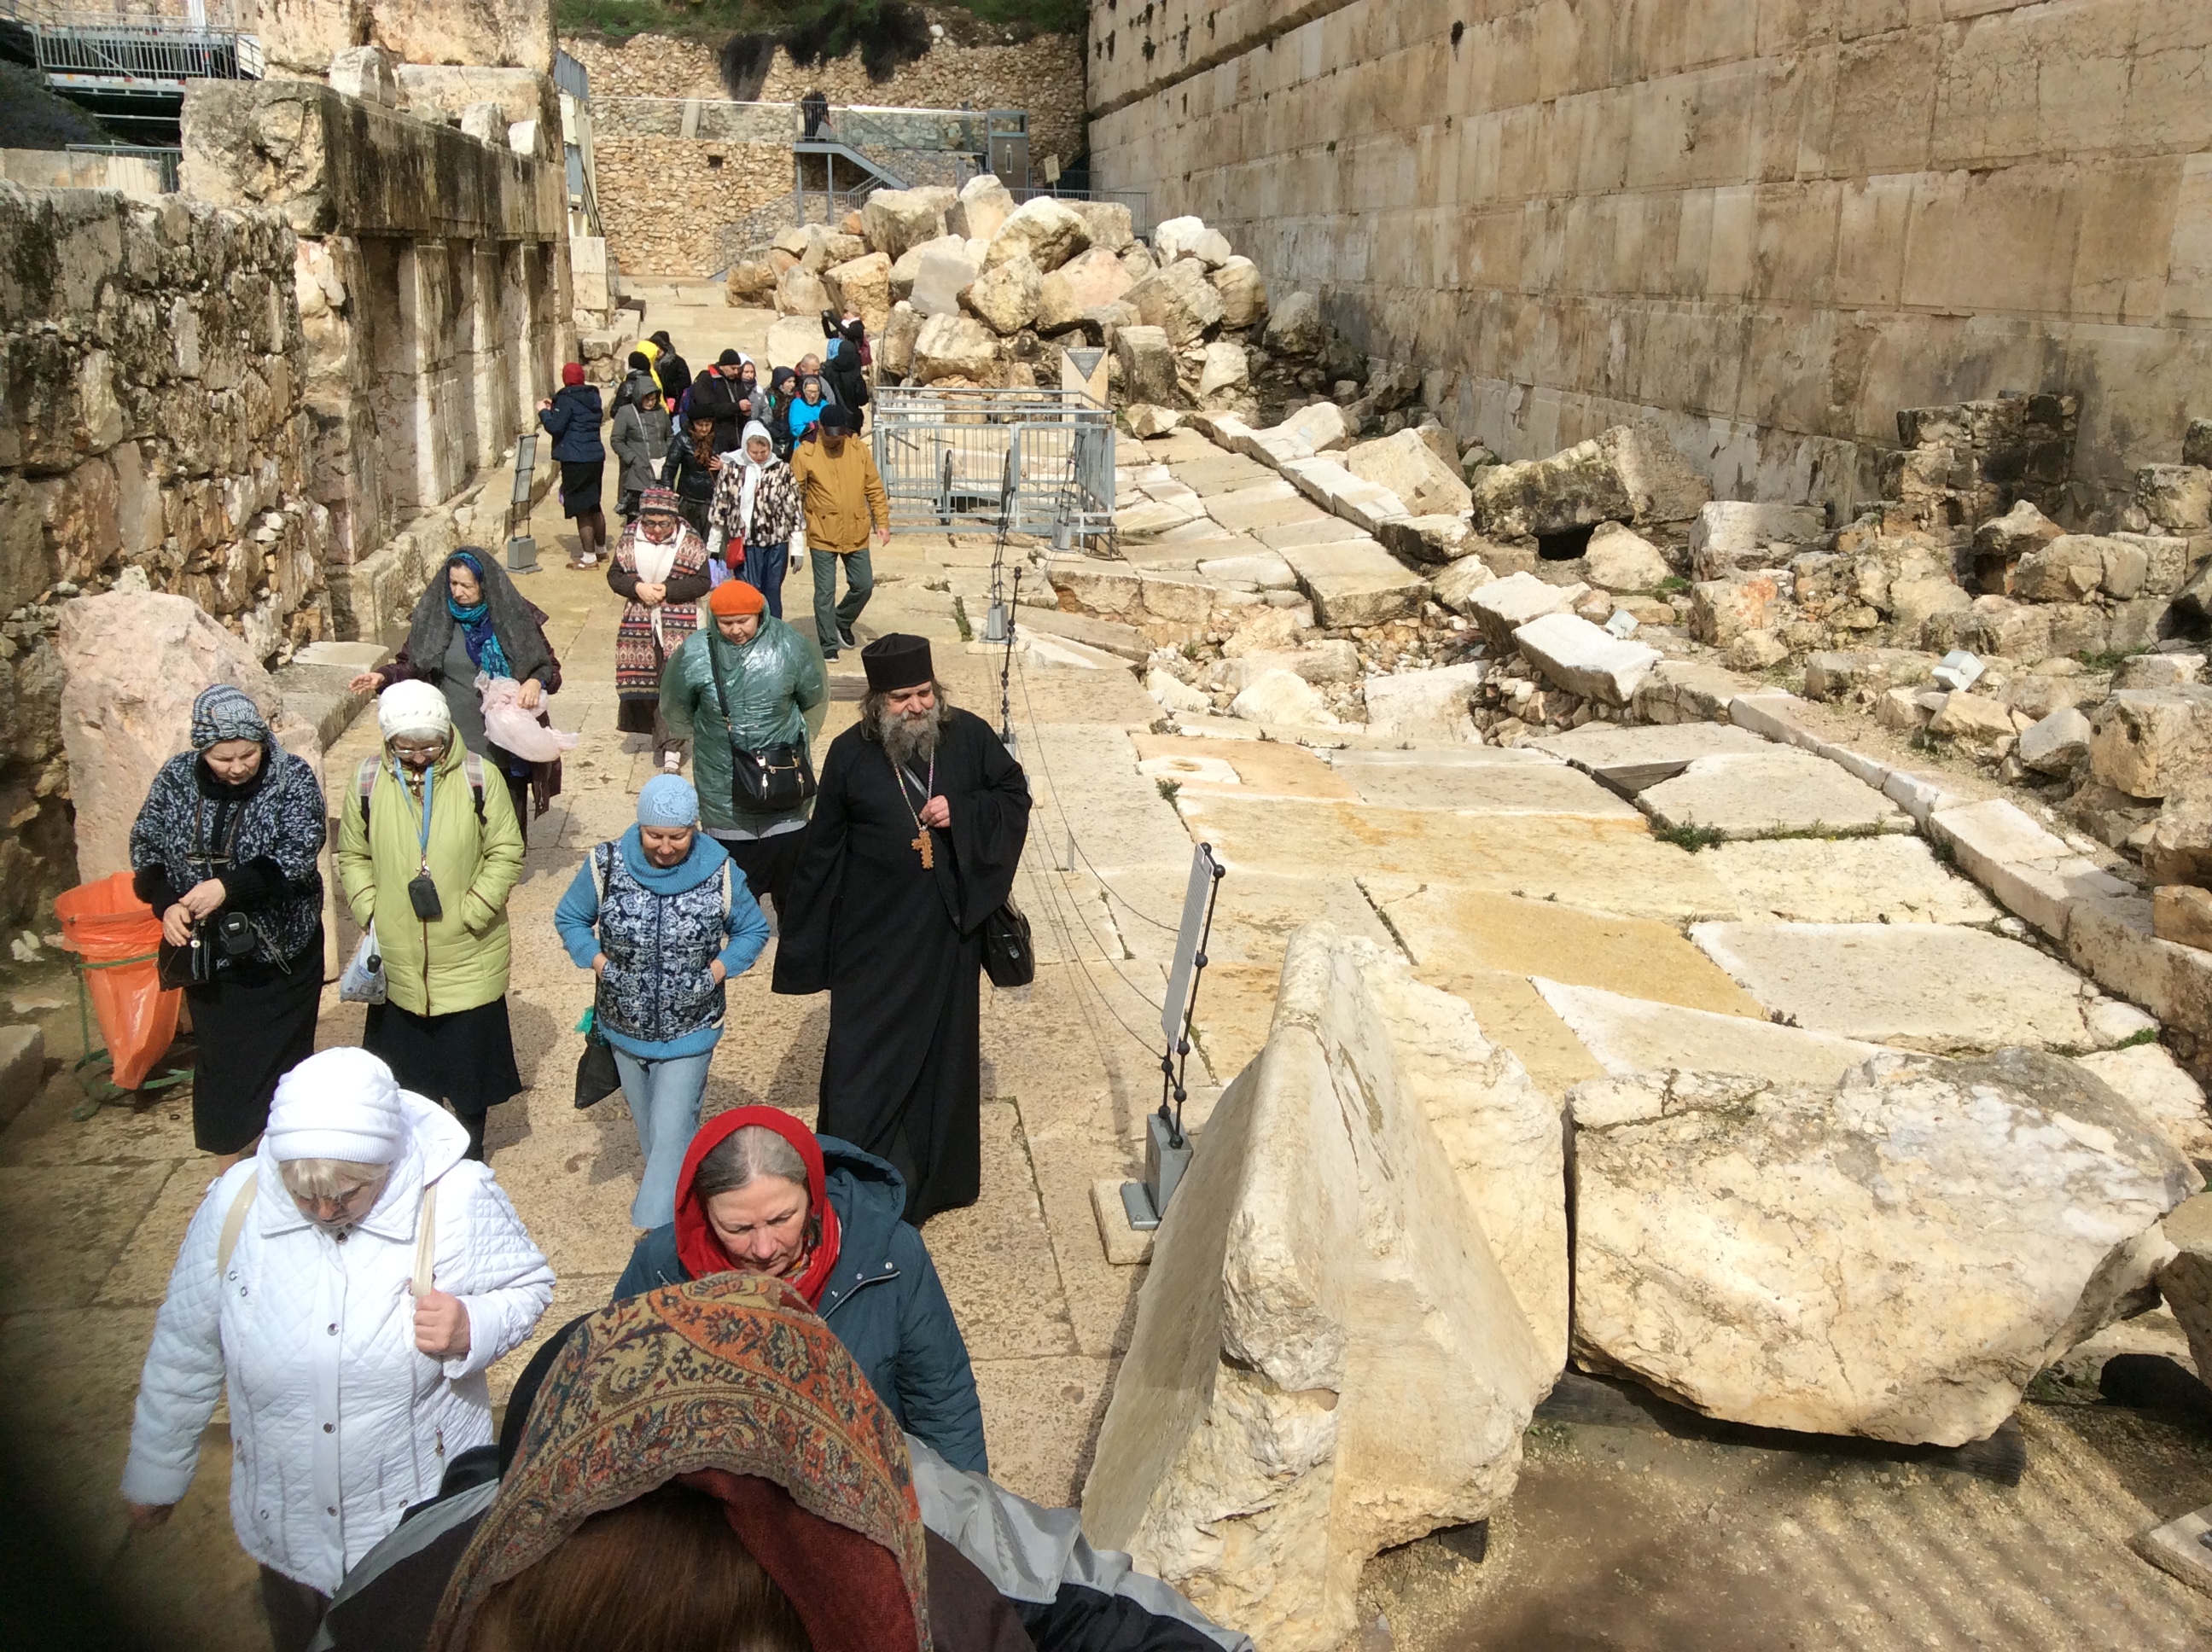 Камень в воздухе в иерусалиме